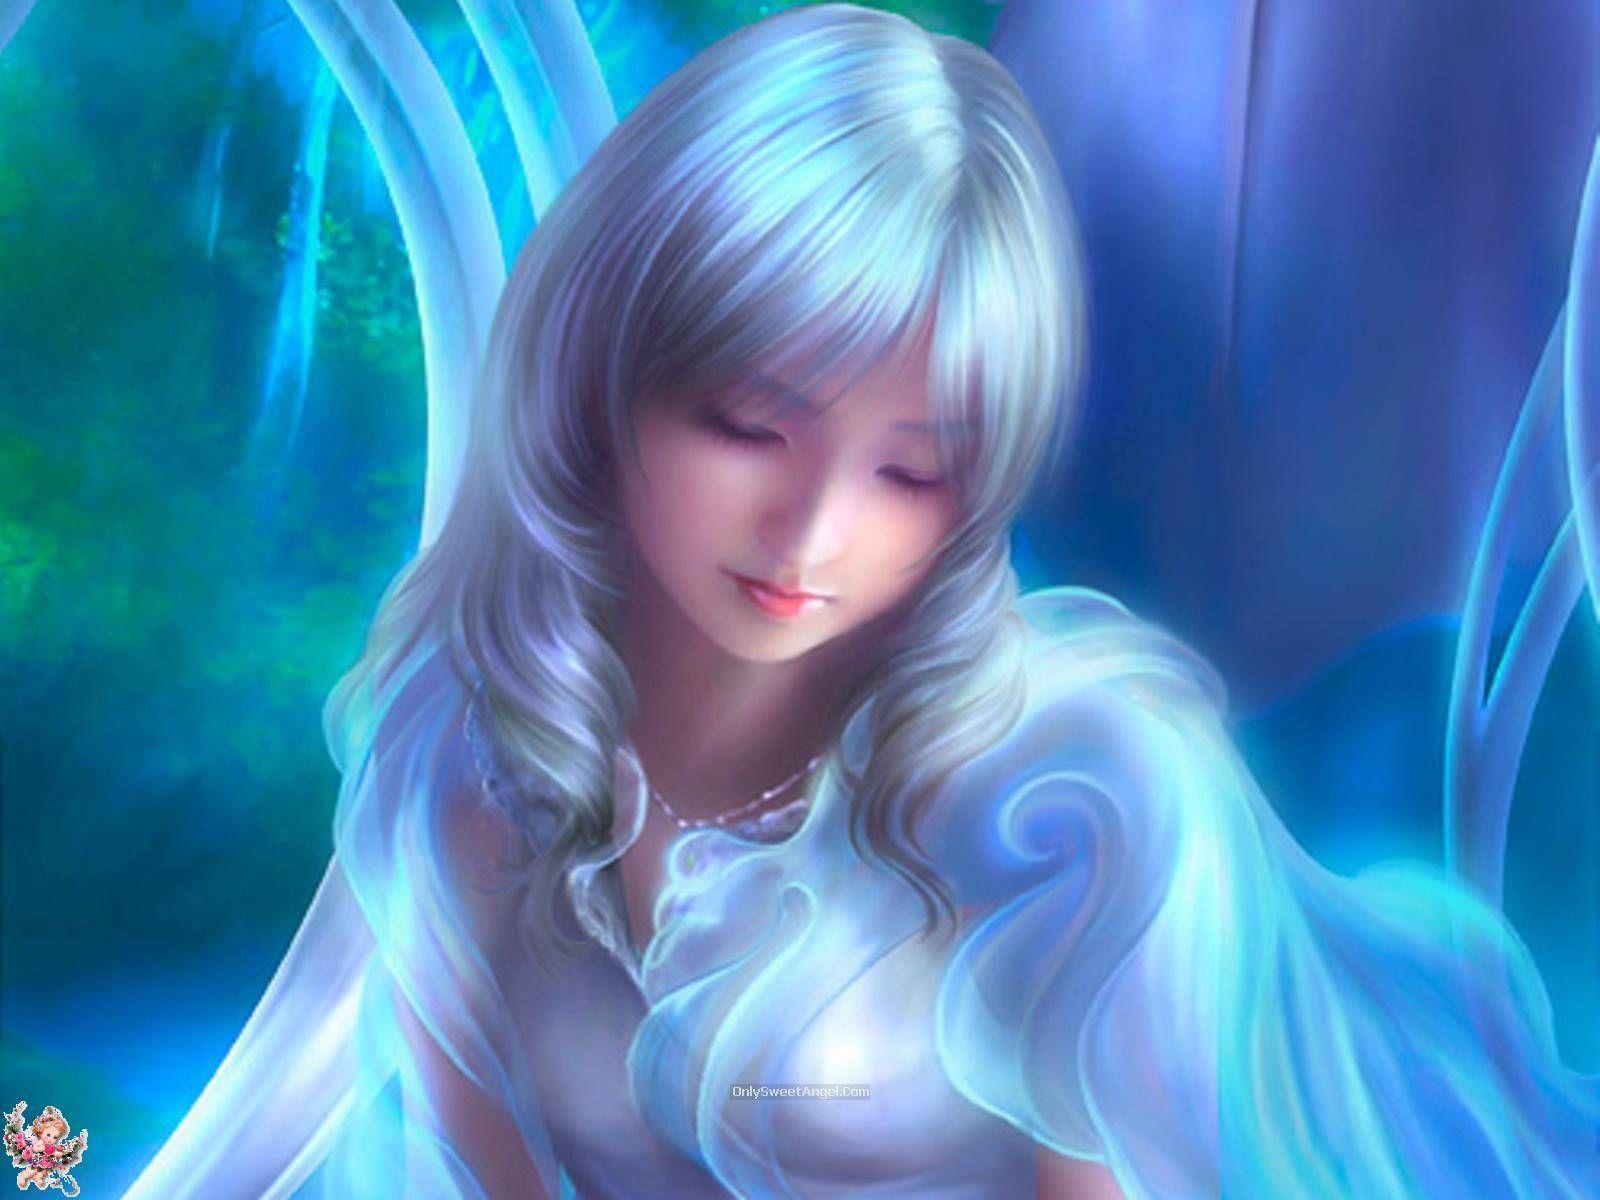 3D Angels Wallpaper All HD Blue Dream